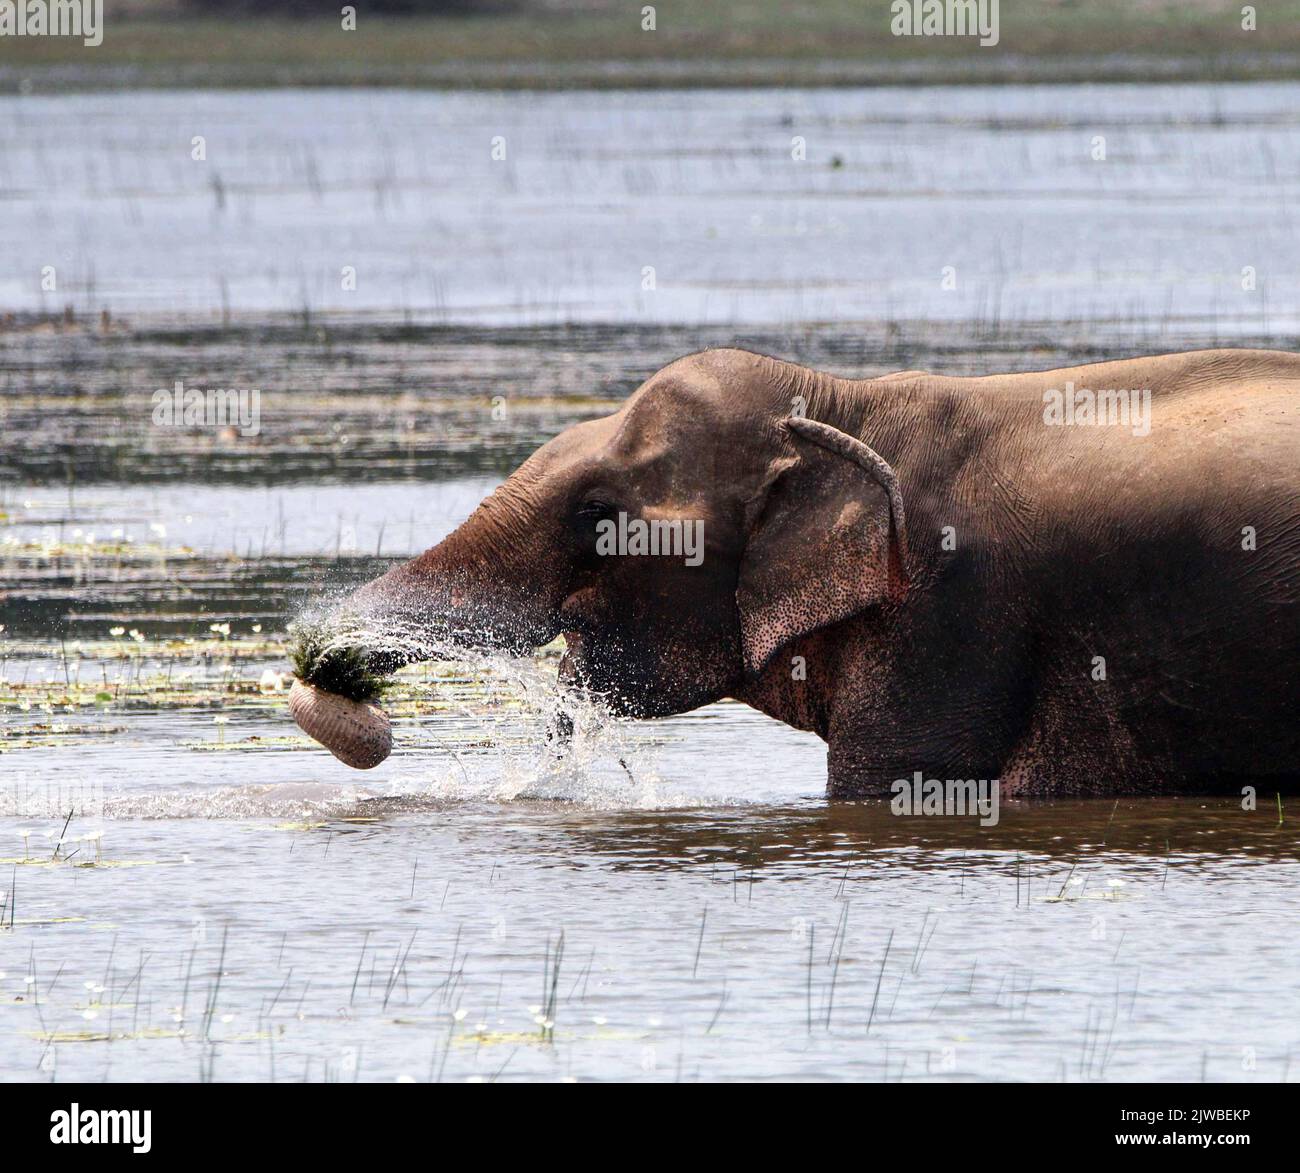 Wildlife in Sri Lanka Stock Photo